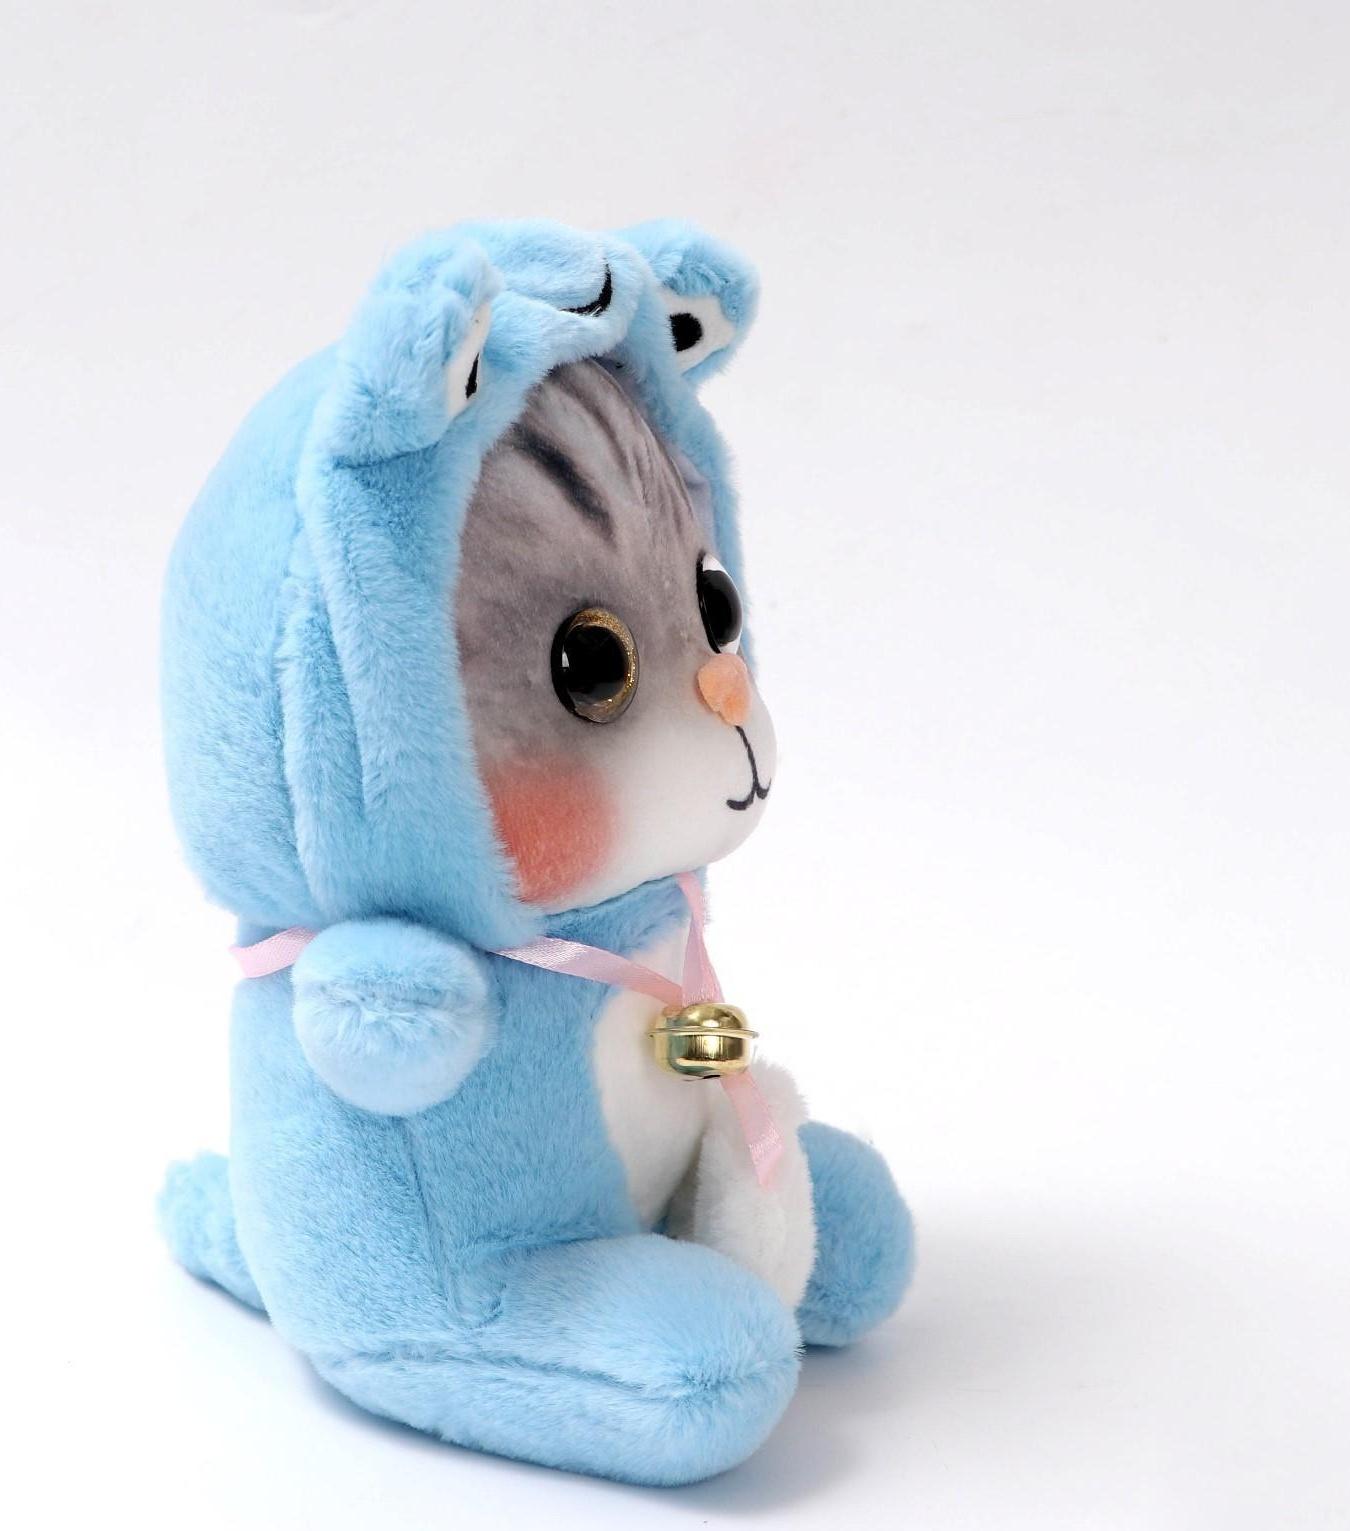 Мягкая игрушка «Котик в костюме», цвета МИКС